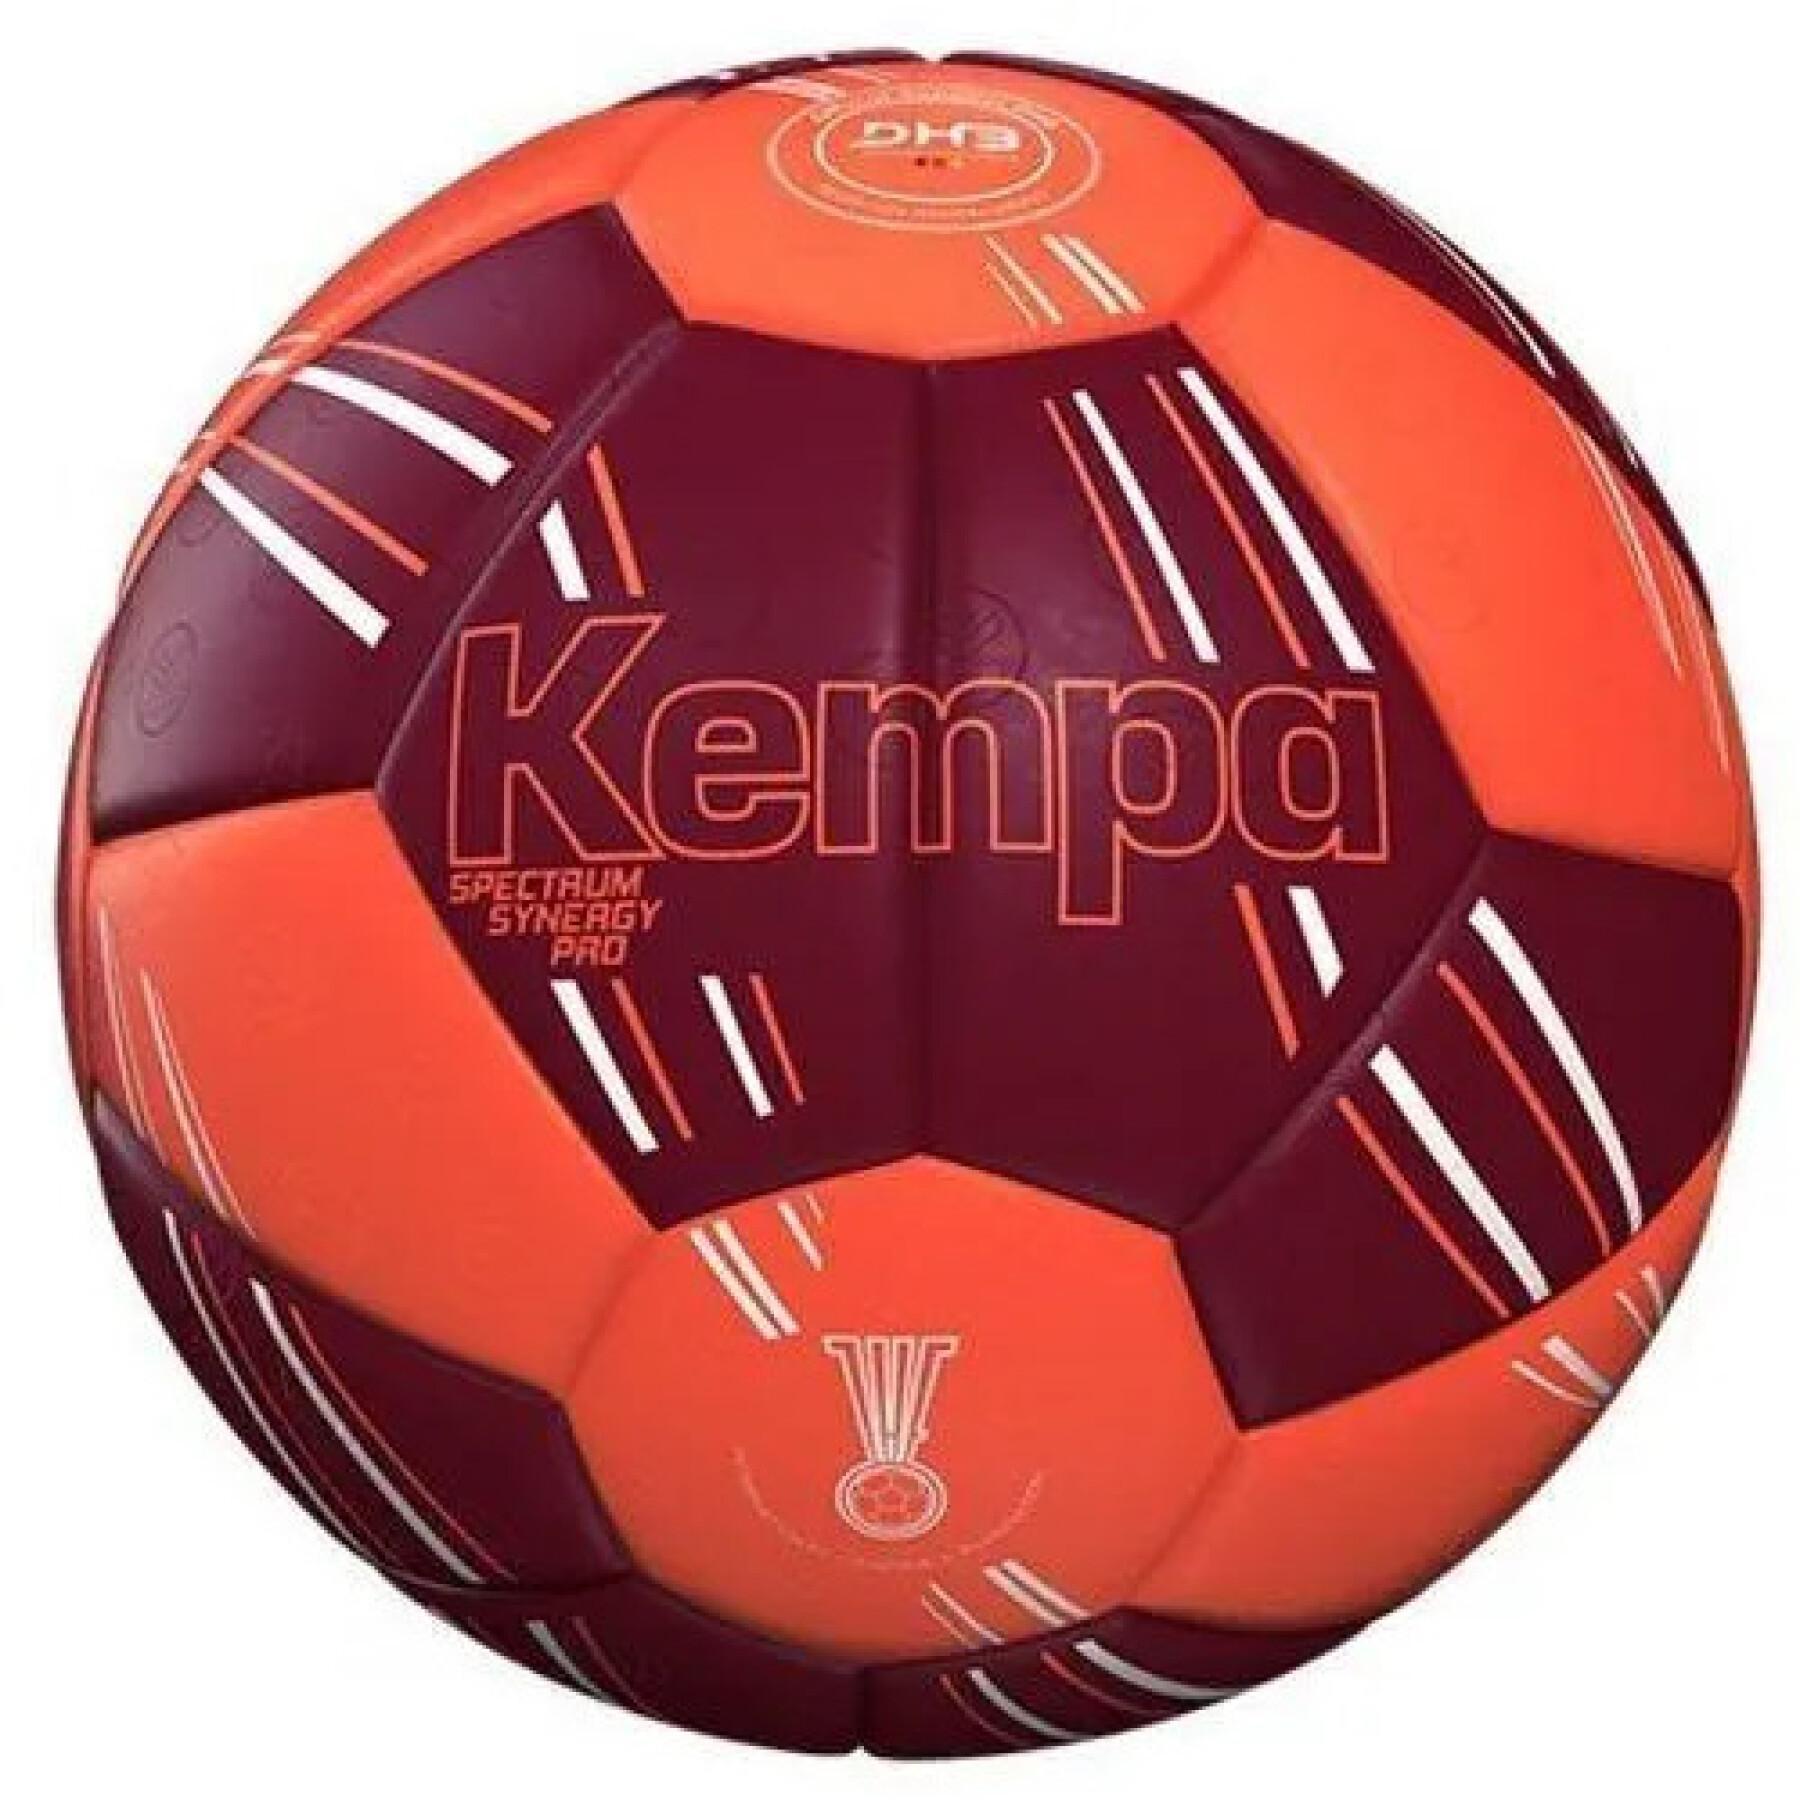 Balón Kempa Spectrum Synergy Pro